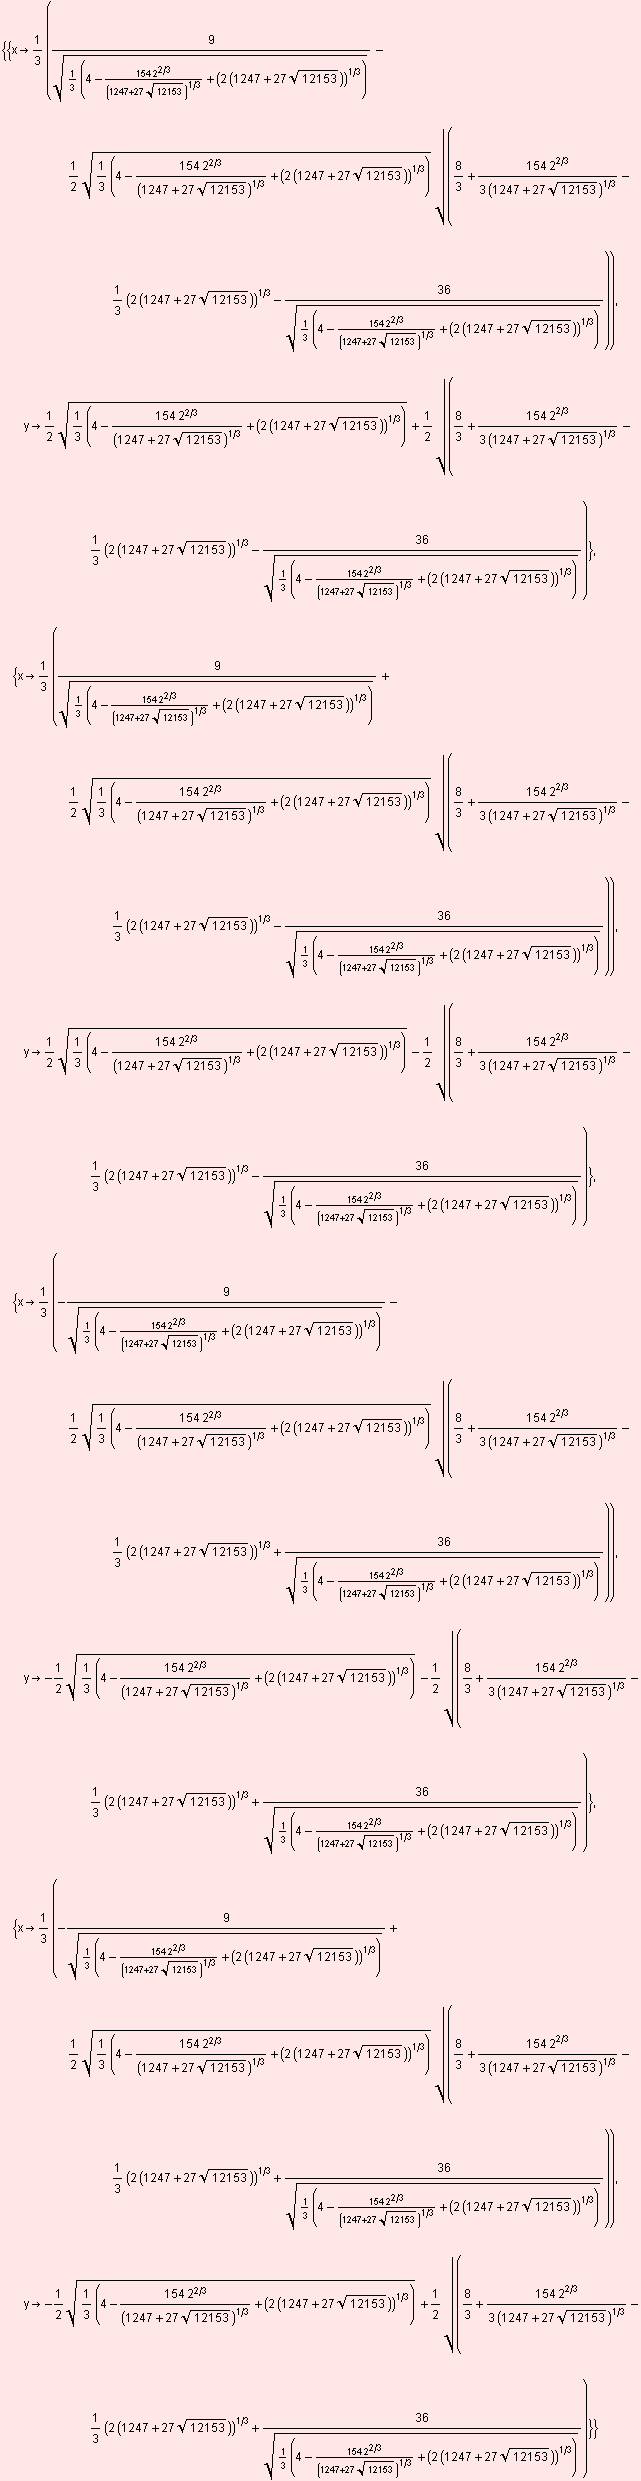 {{x1/3 (9/(1/3 (4 - (154 2^(2/3))/(1247 + 27 12153^(1/2))^(1/3) + (2 (1247 + 27 12153^ ... /3 (4 - (154 2^(2/3))/(1247 + 27 12153^(1/2))^(1/3) + (2 (1247 + 27 12153^(1/2)))^(1/3)))^(1/2))}}